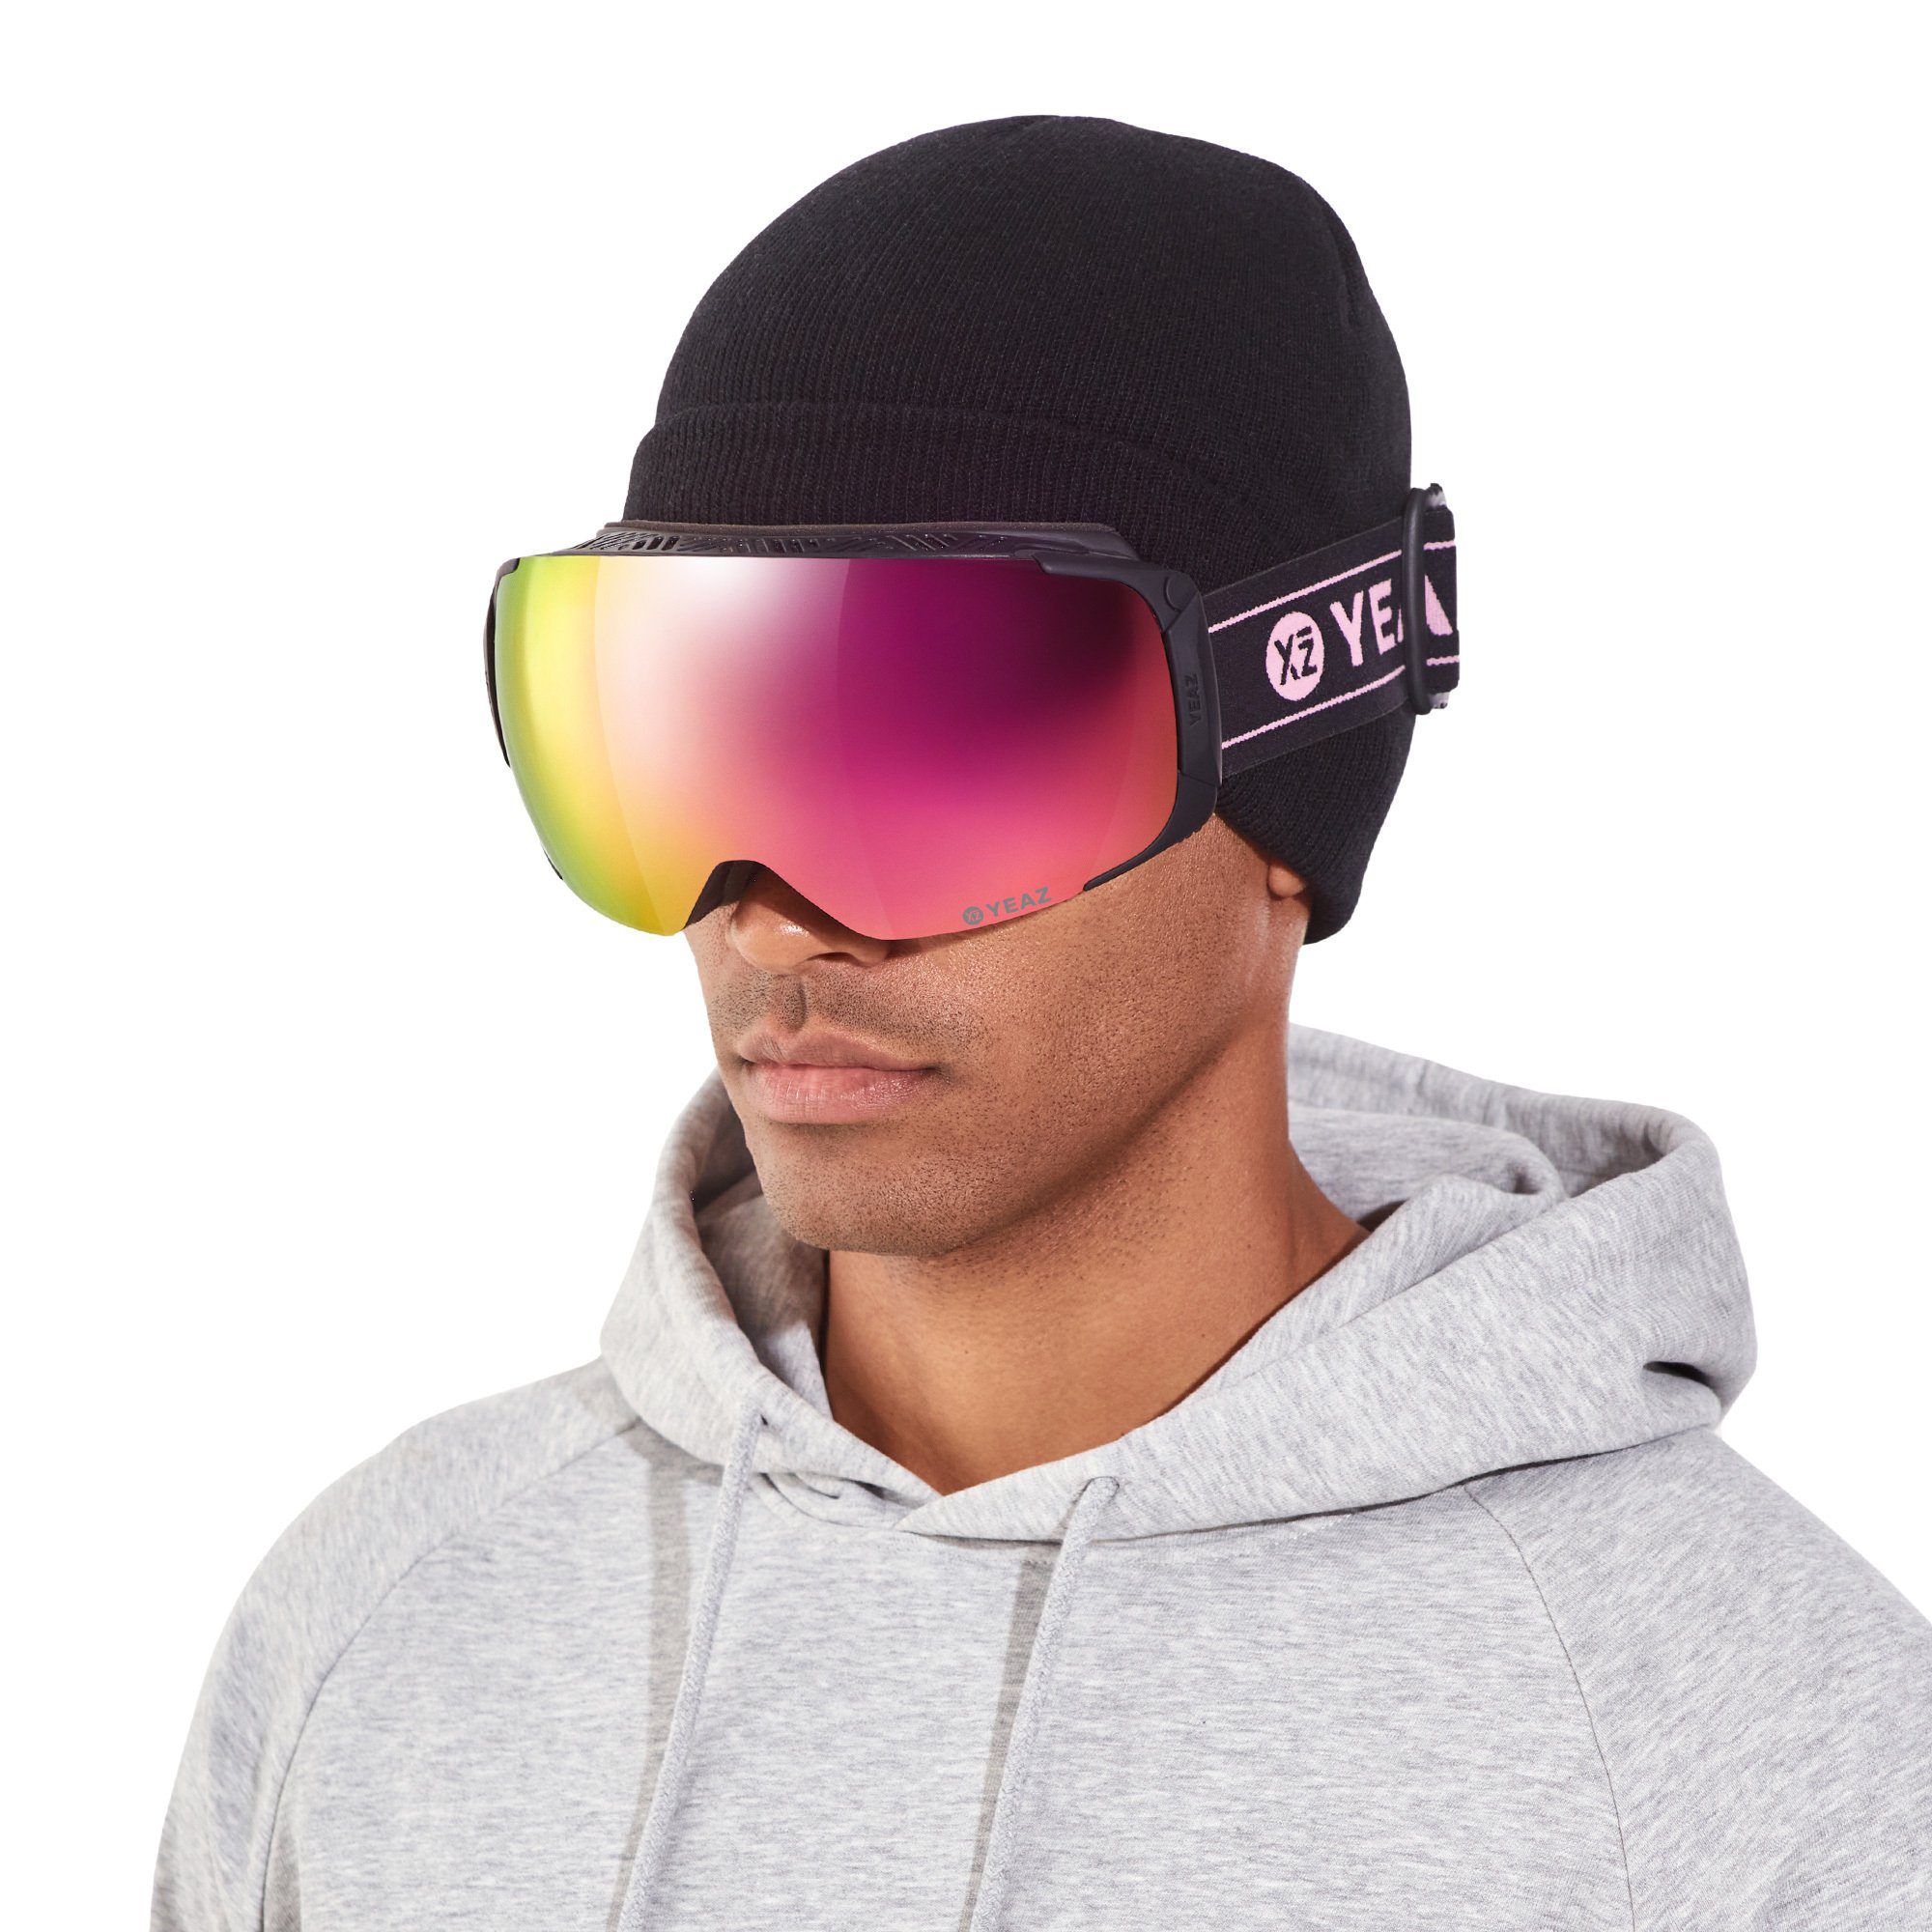 Skibrille und snowboard-brille, Erwachsene TWEAK-X und und ski- Premium-Ski- für Jugendliche YEAZ Snowboardbrille